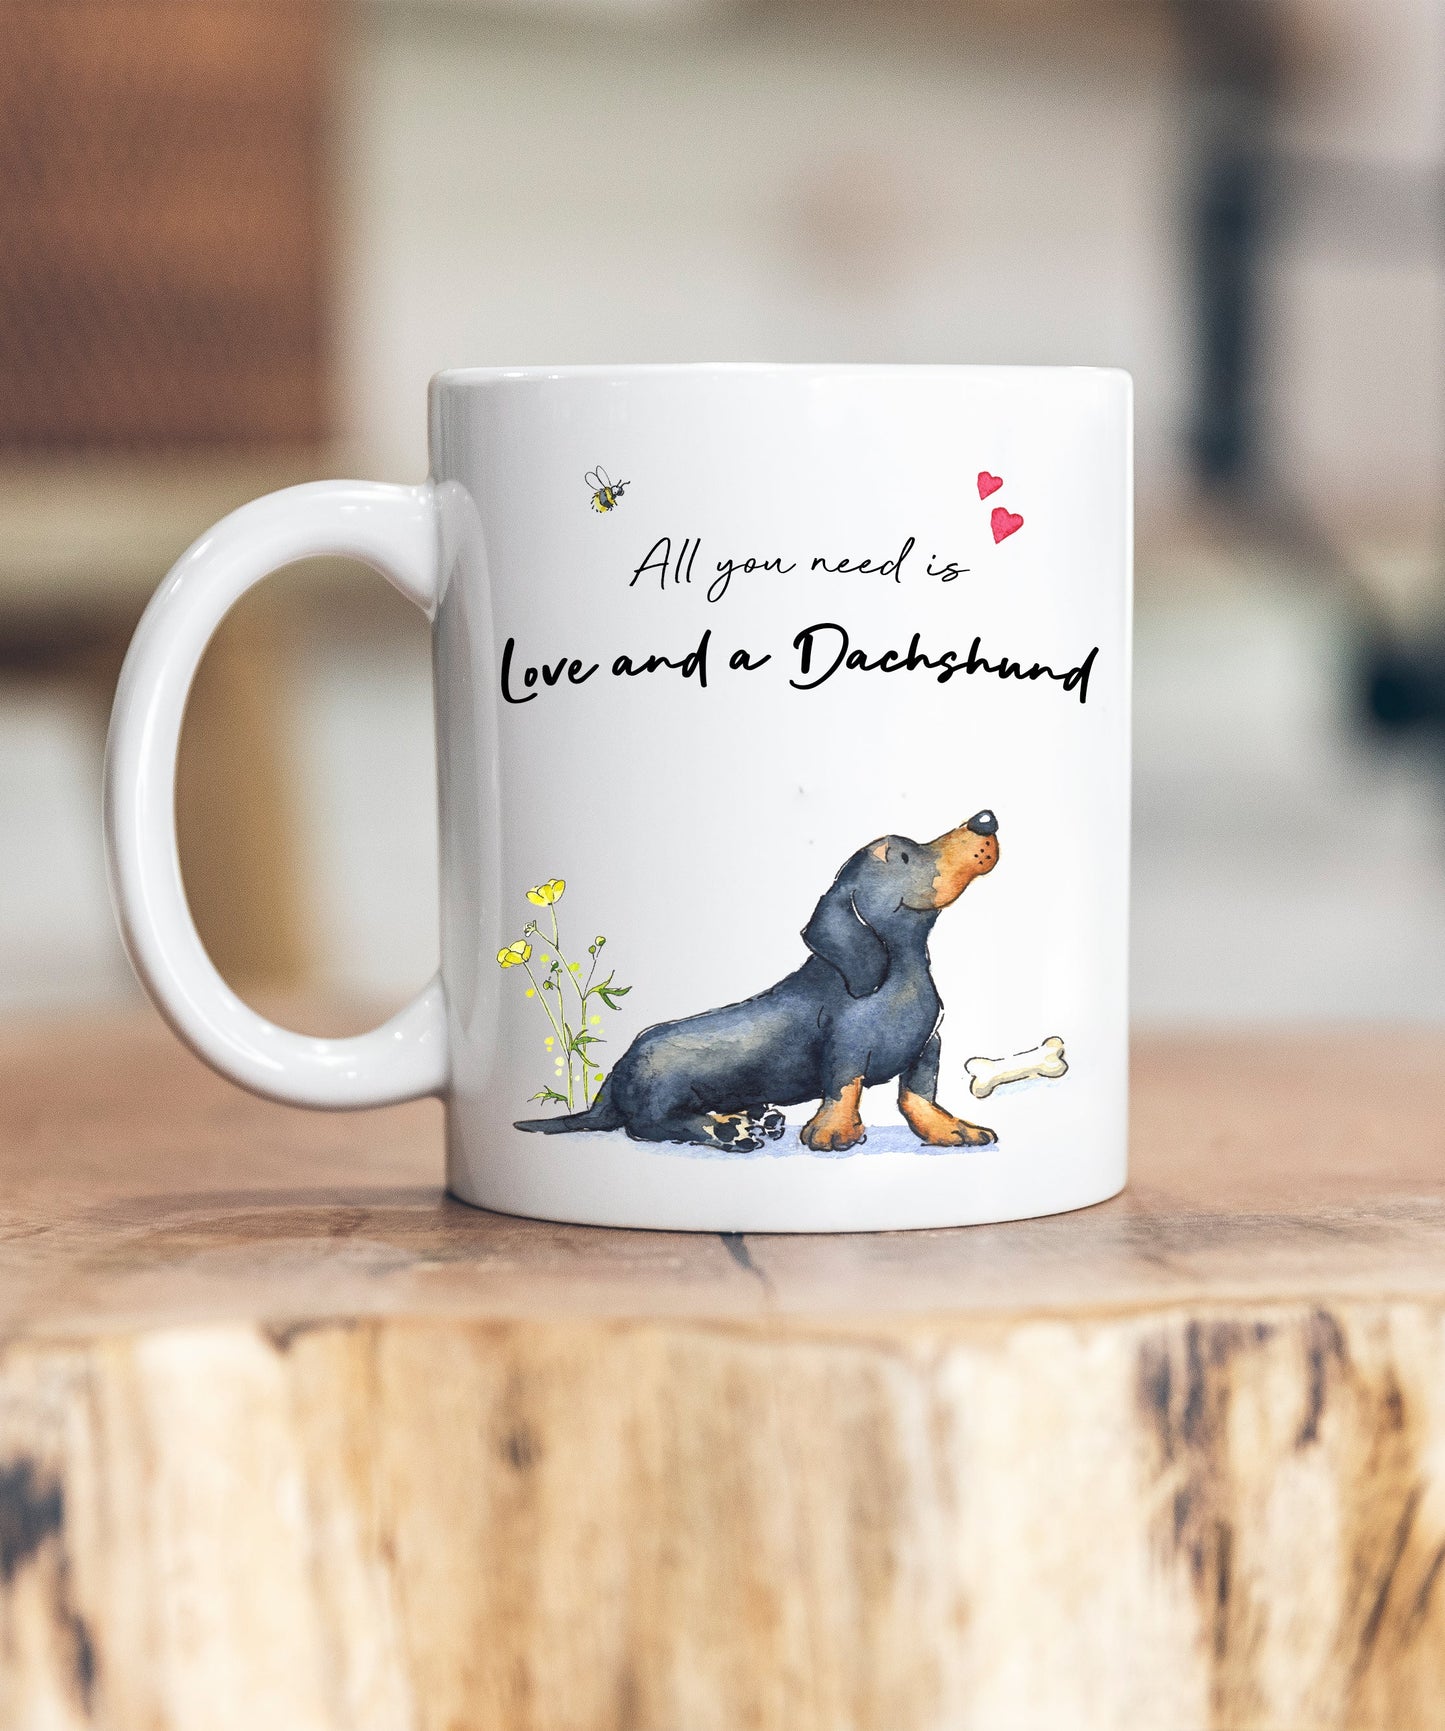 Love and a Dachshund Ceramic Mug